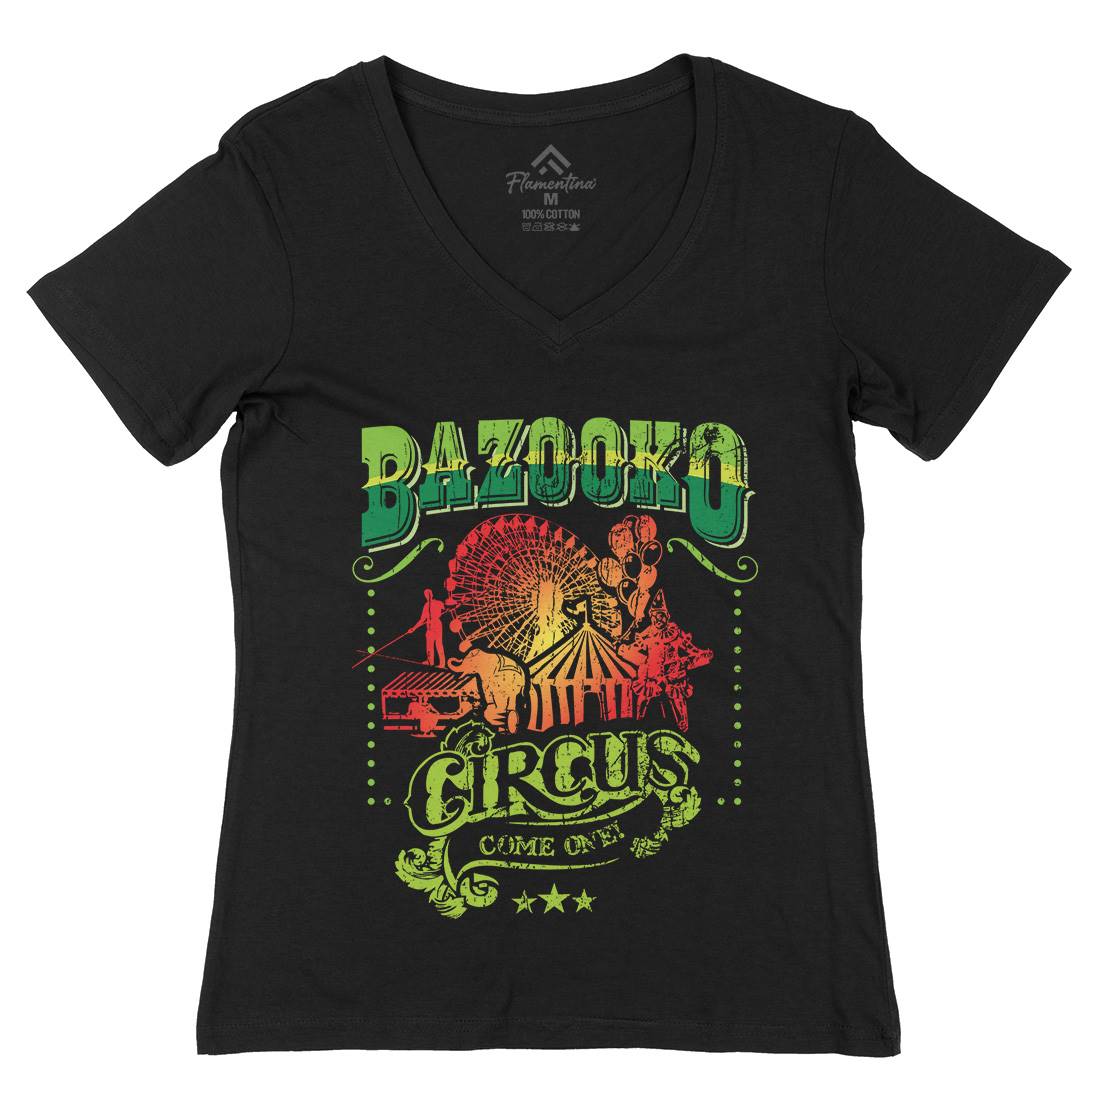 Bazookos Circus Womens Organic V-Neck T-Shirt Retro D254